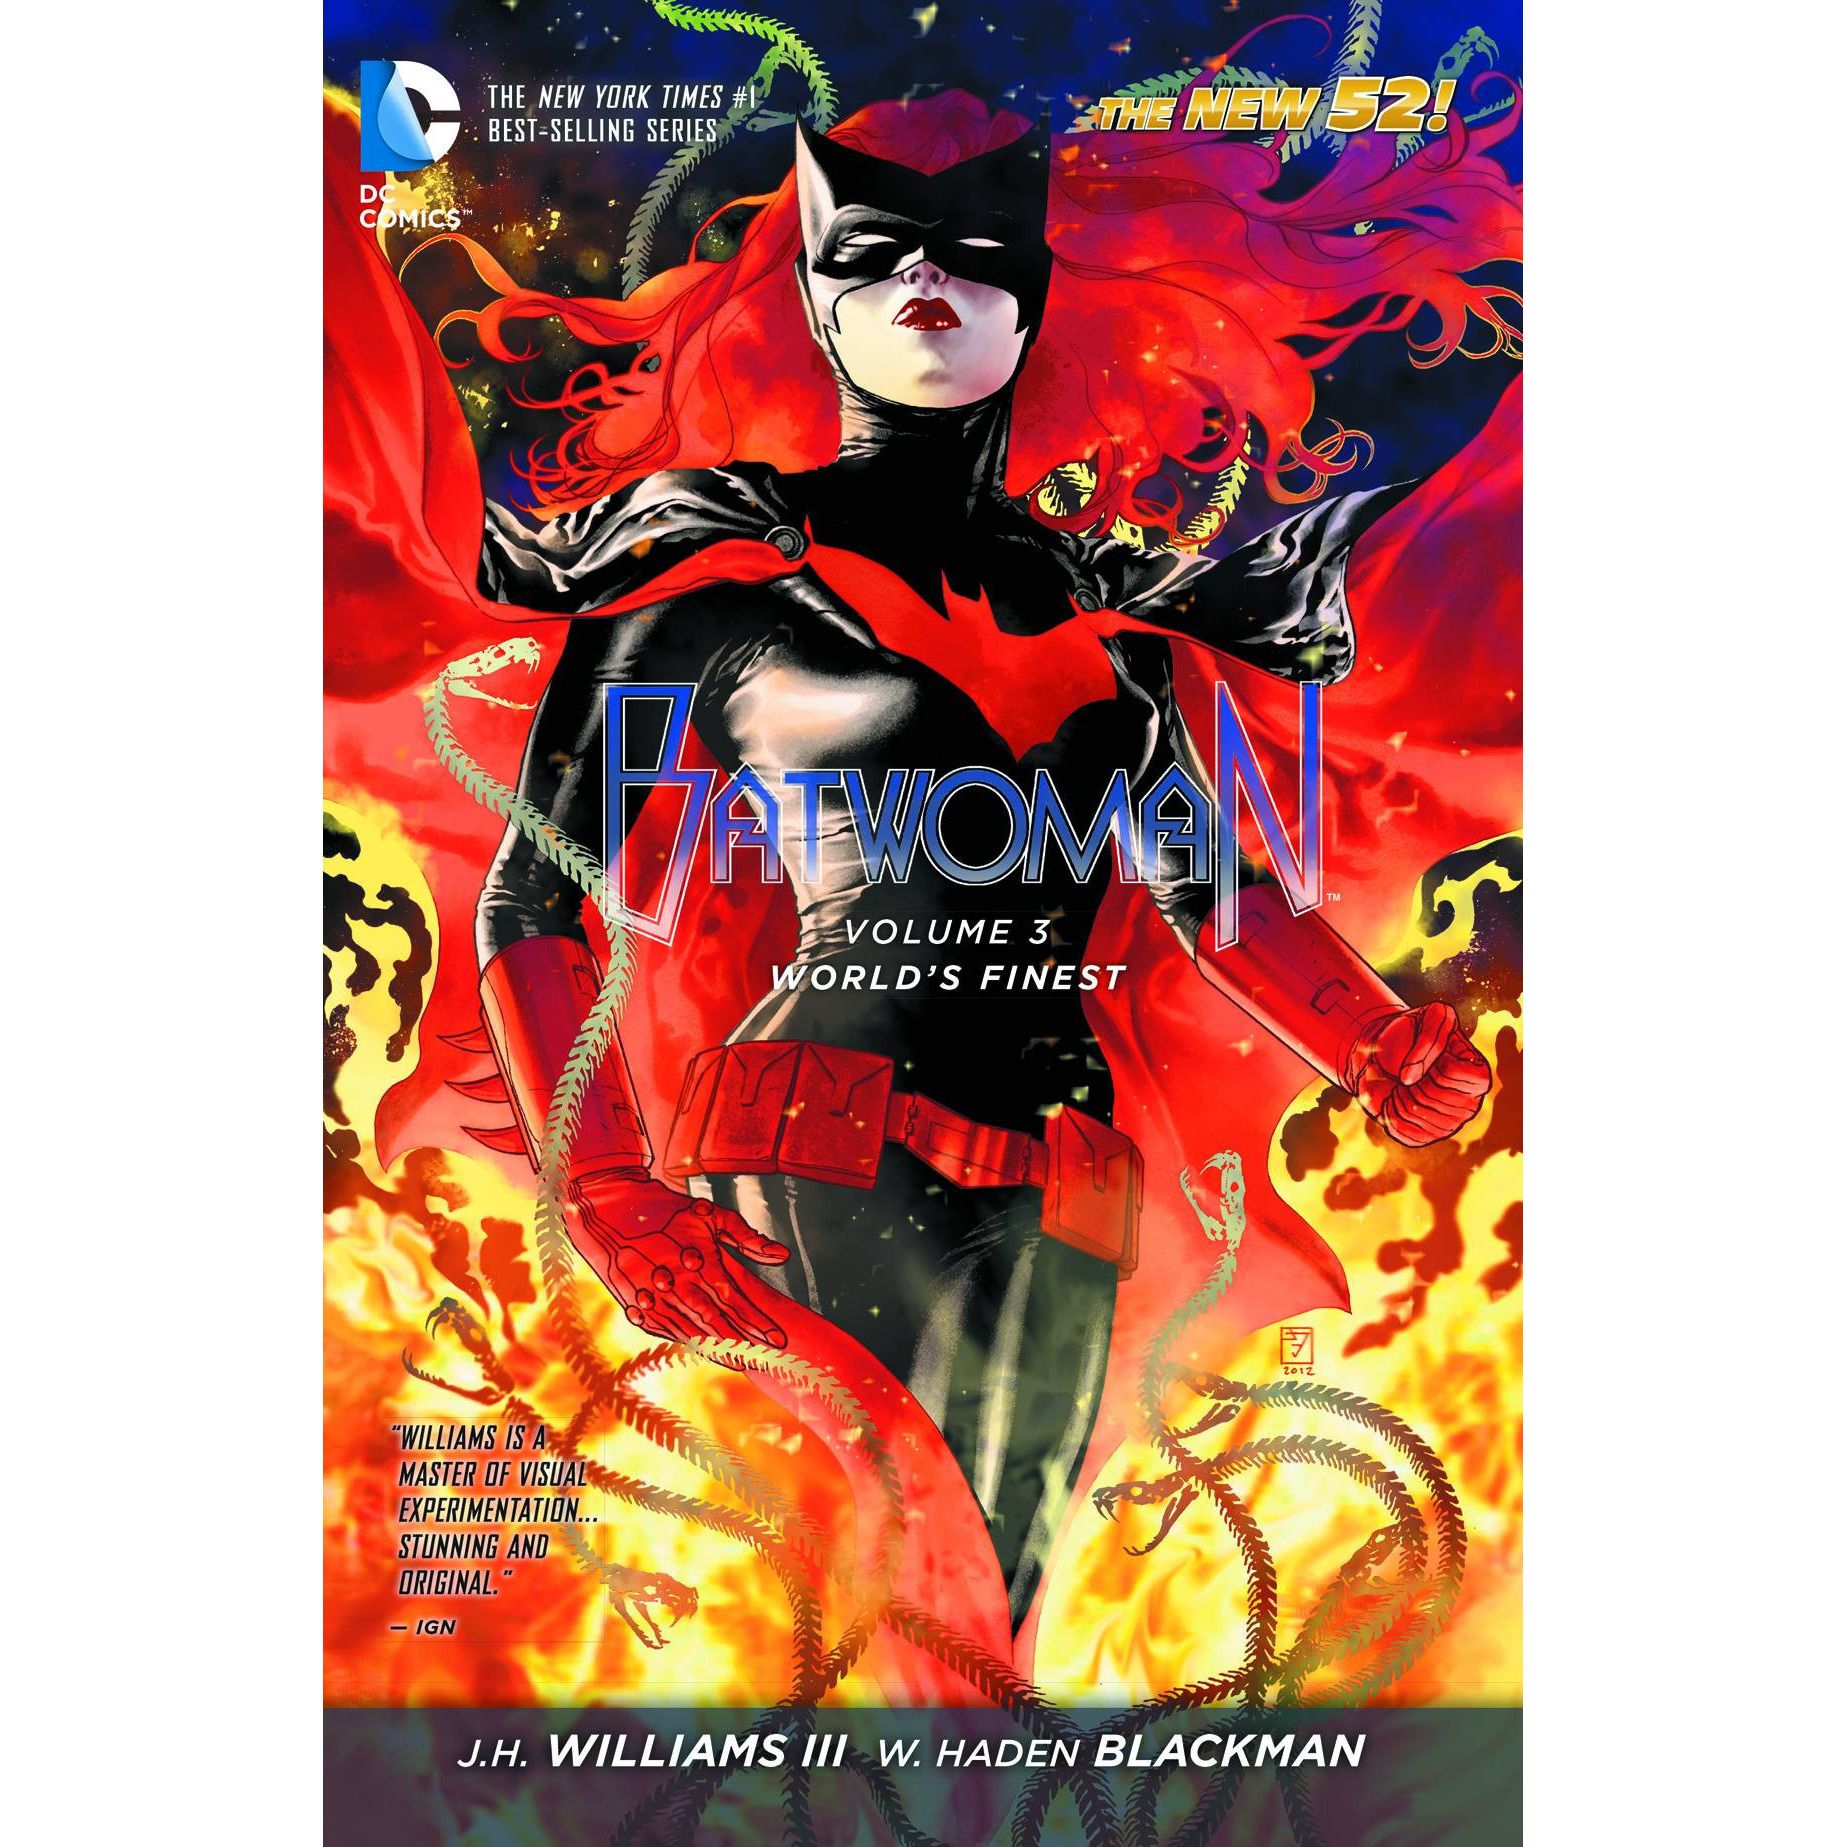  Batwoman TP VOL 03 World's Finest Uncanny!